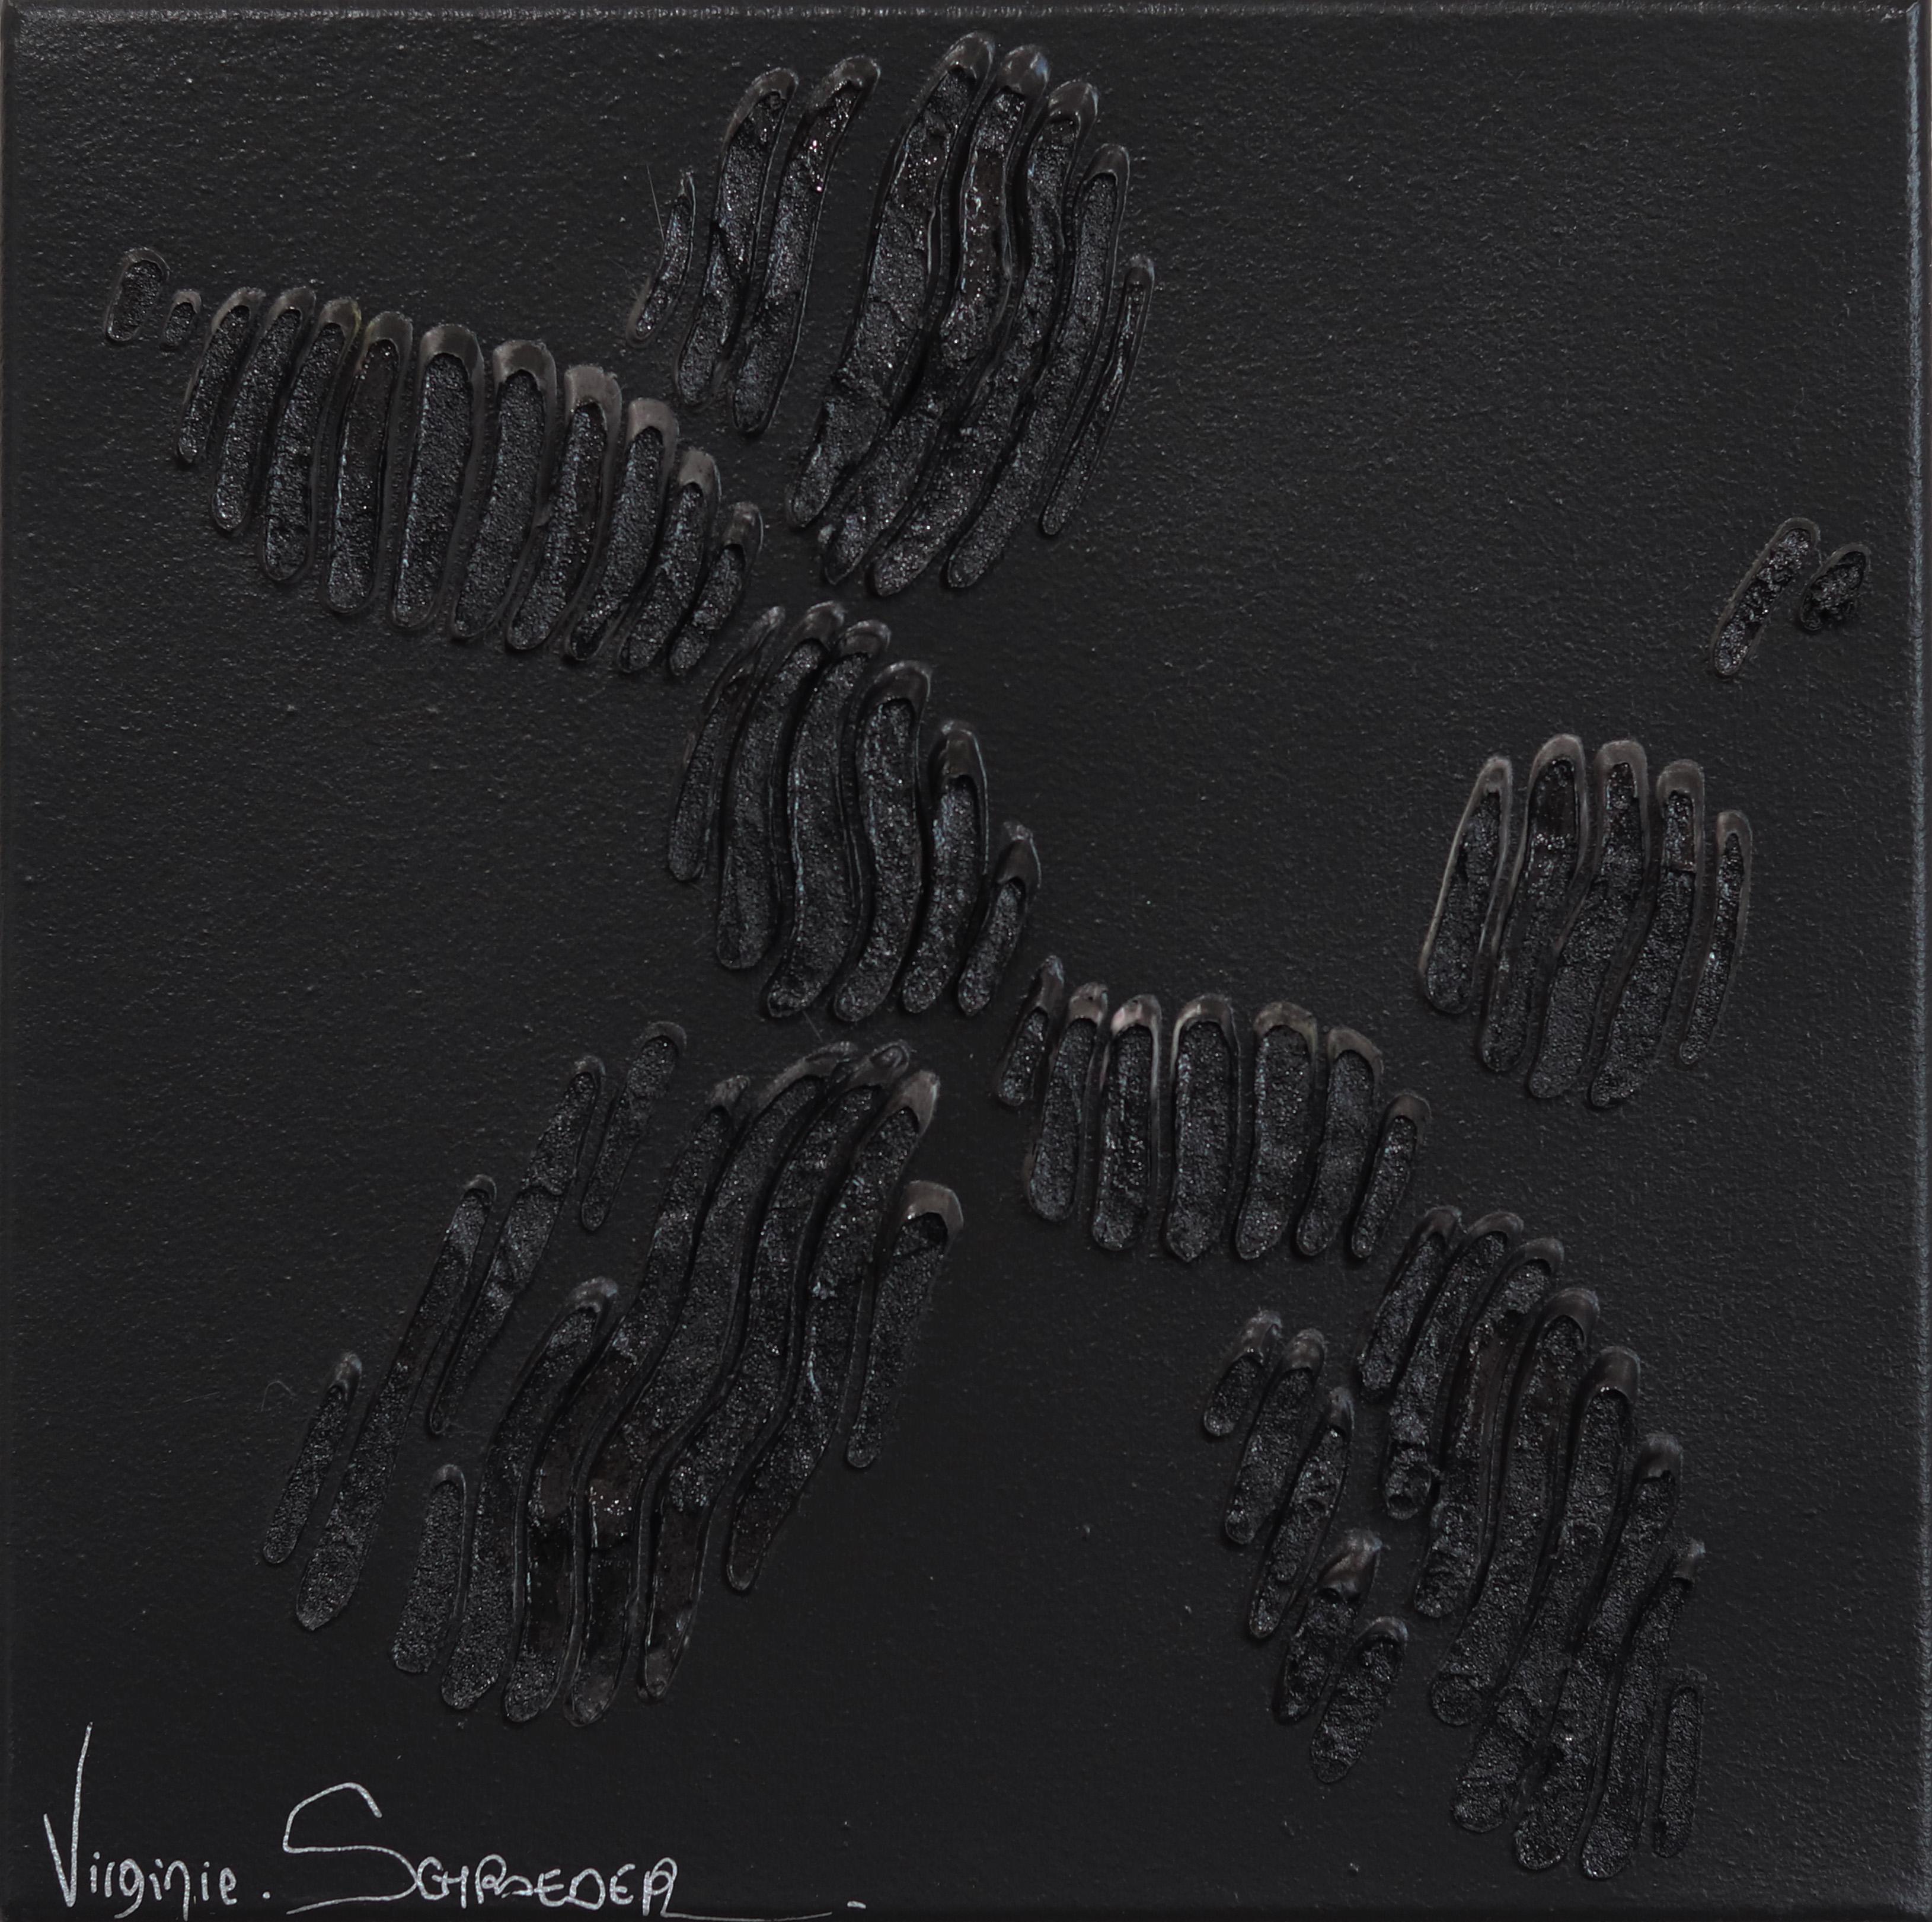 Virginie Schroeder Abstract Painting – The Black Dog Balloon - Minimalistisches abstraktes 3D-Gemälde in Schwarz mit strukturierter Textur